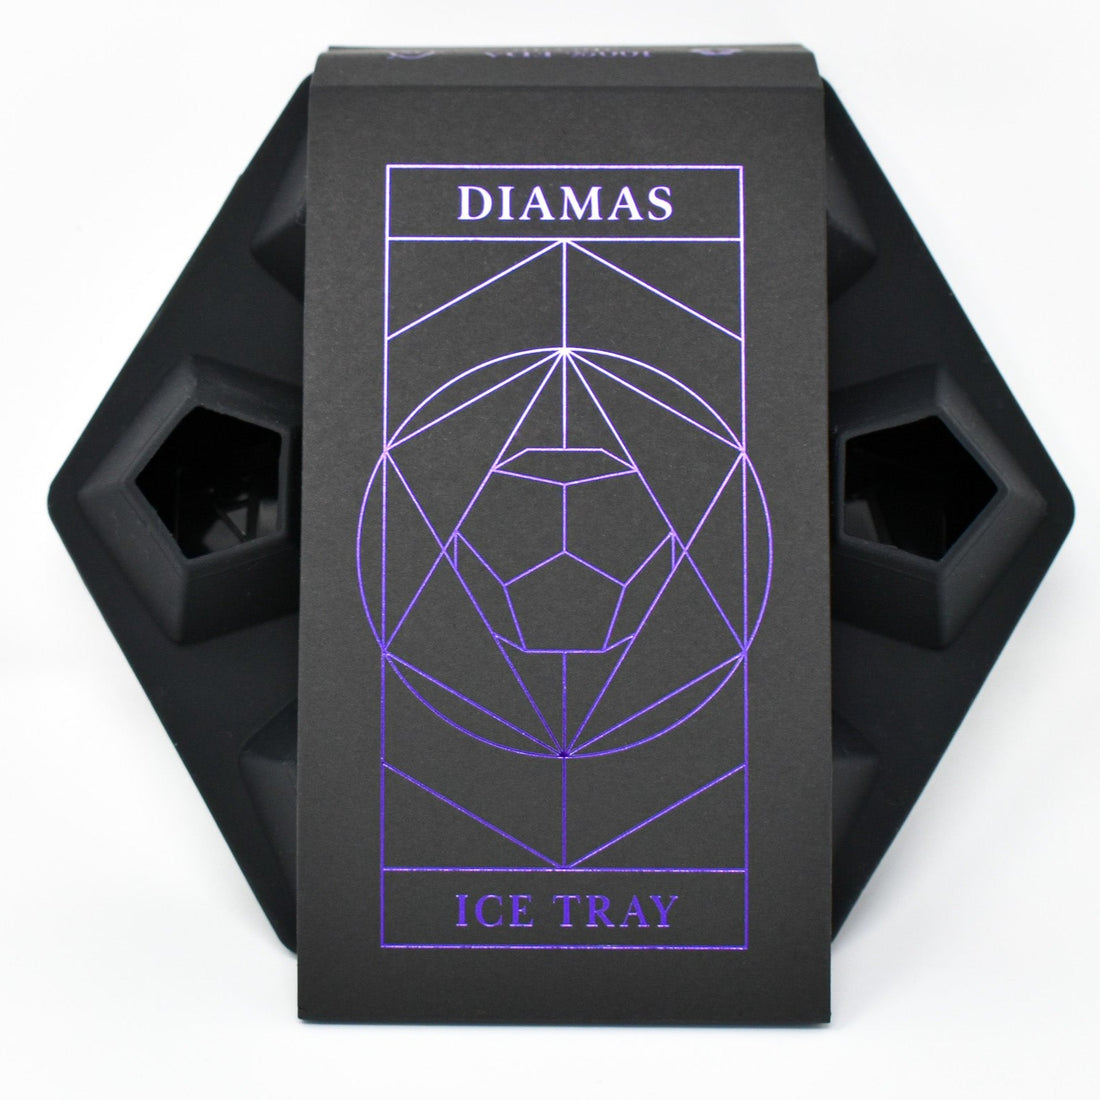 DIAMAS Signature Ice Tray Gift Set